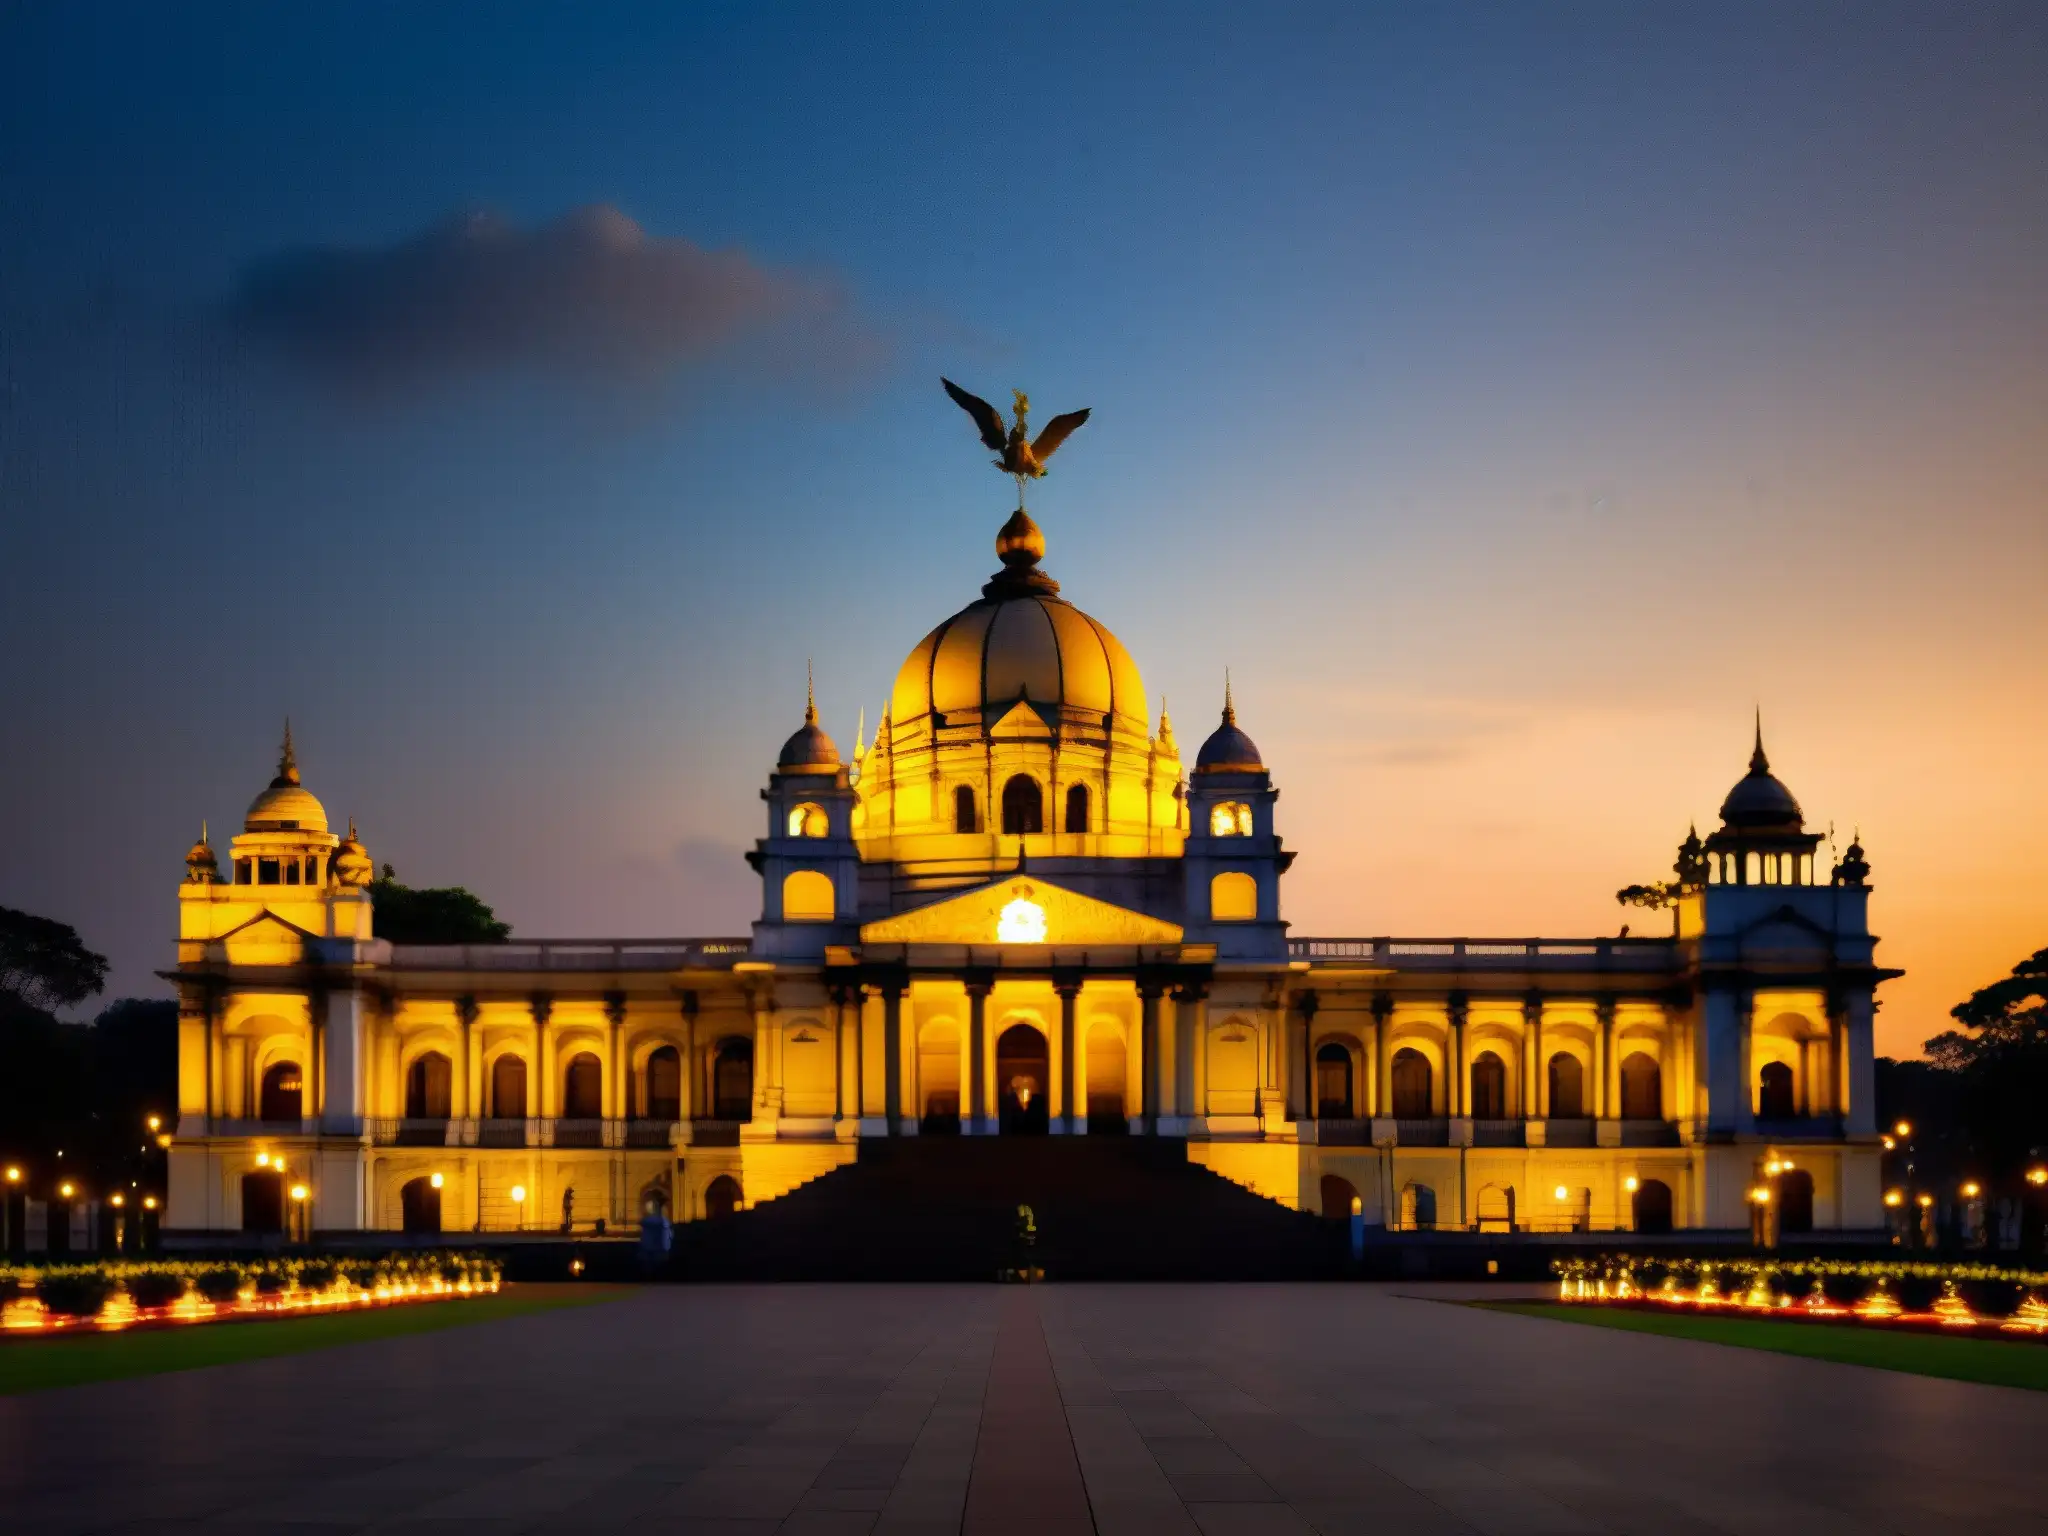 Una imagen documental de alta resolución del Victoria Memorial en Kolkata, India, capturada al anochecer con una iluminación dramática